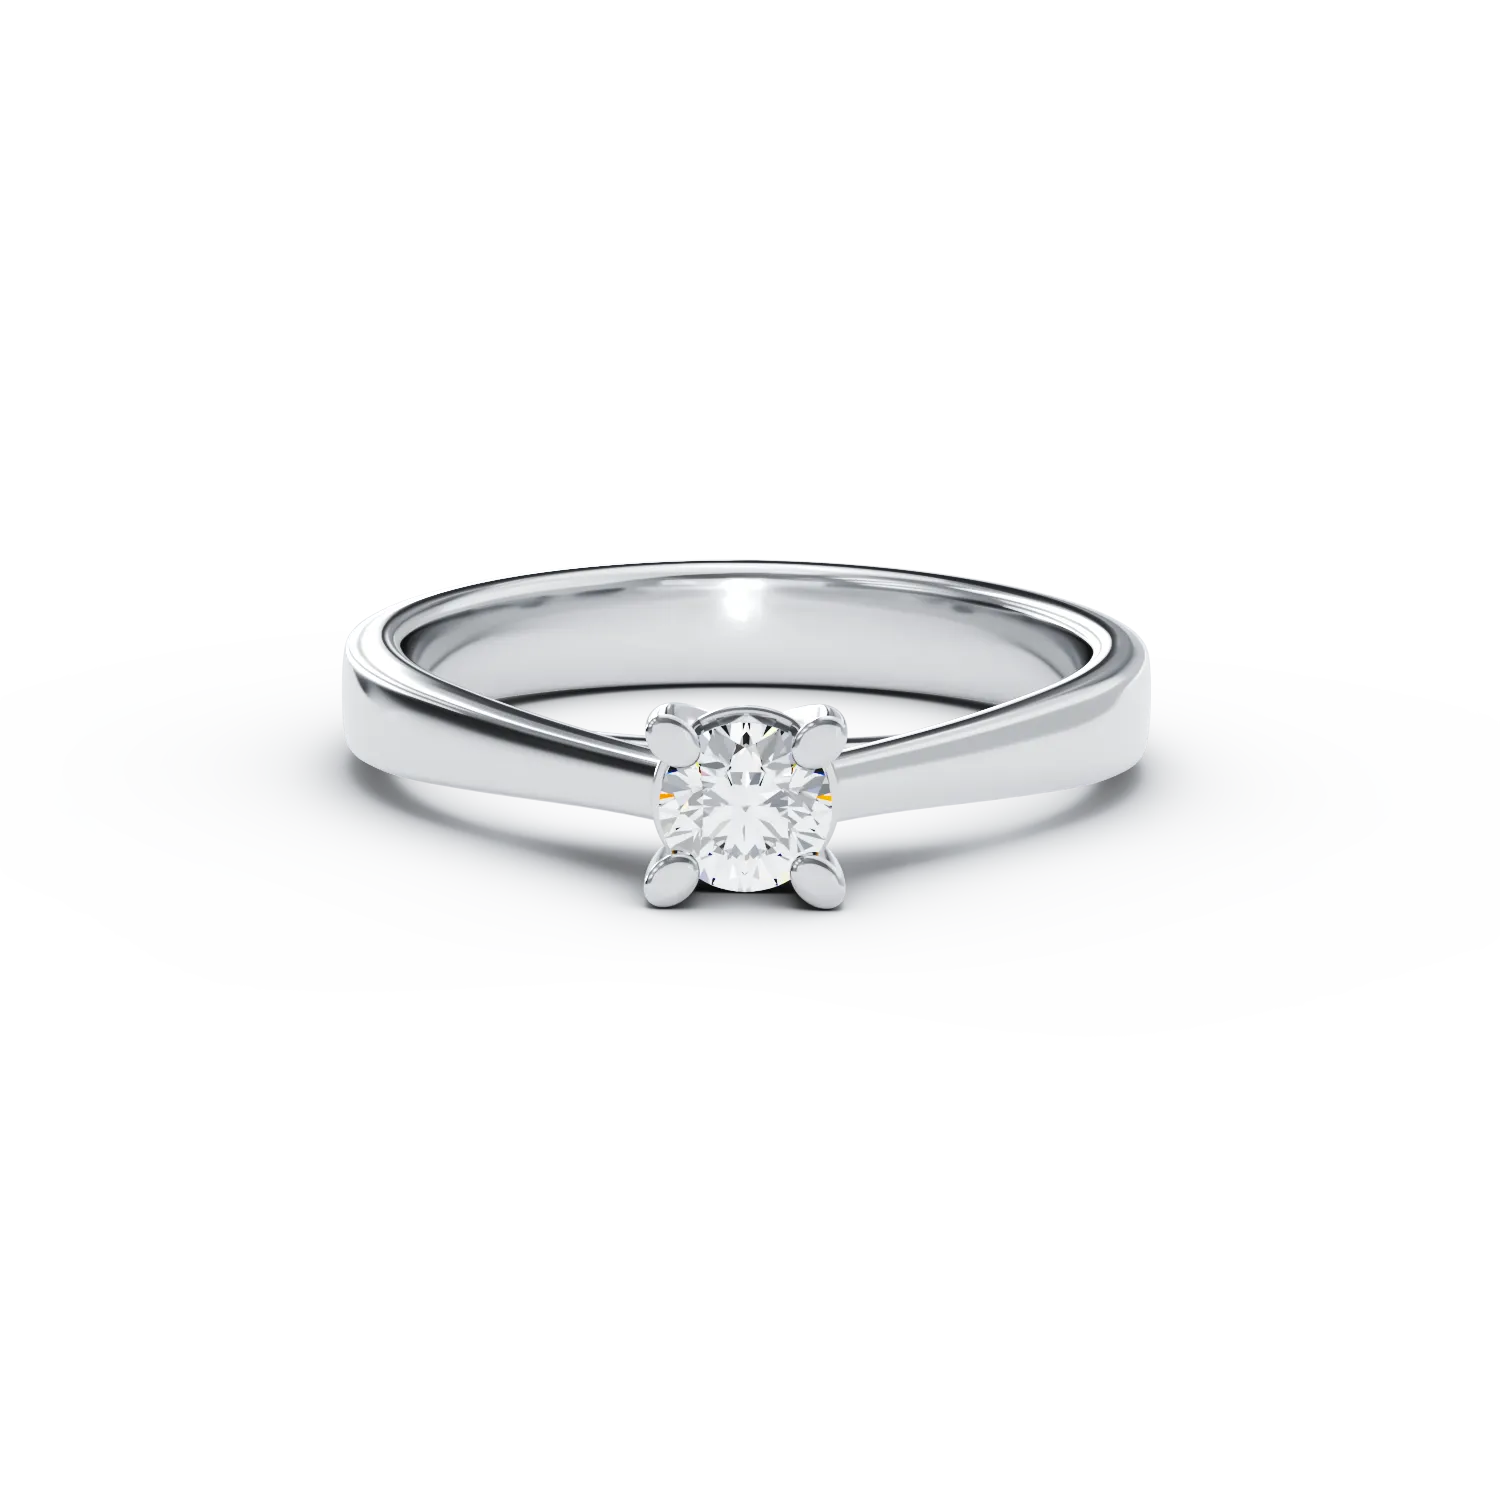 Годежен пръстен от бяло злато с диамант пасианс 0.15ct